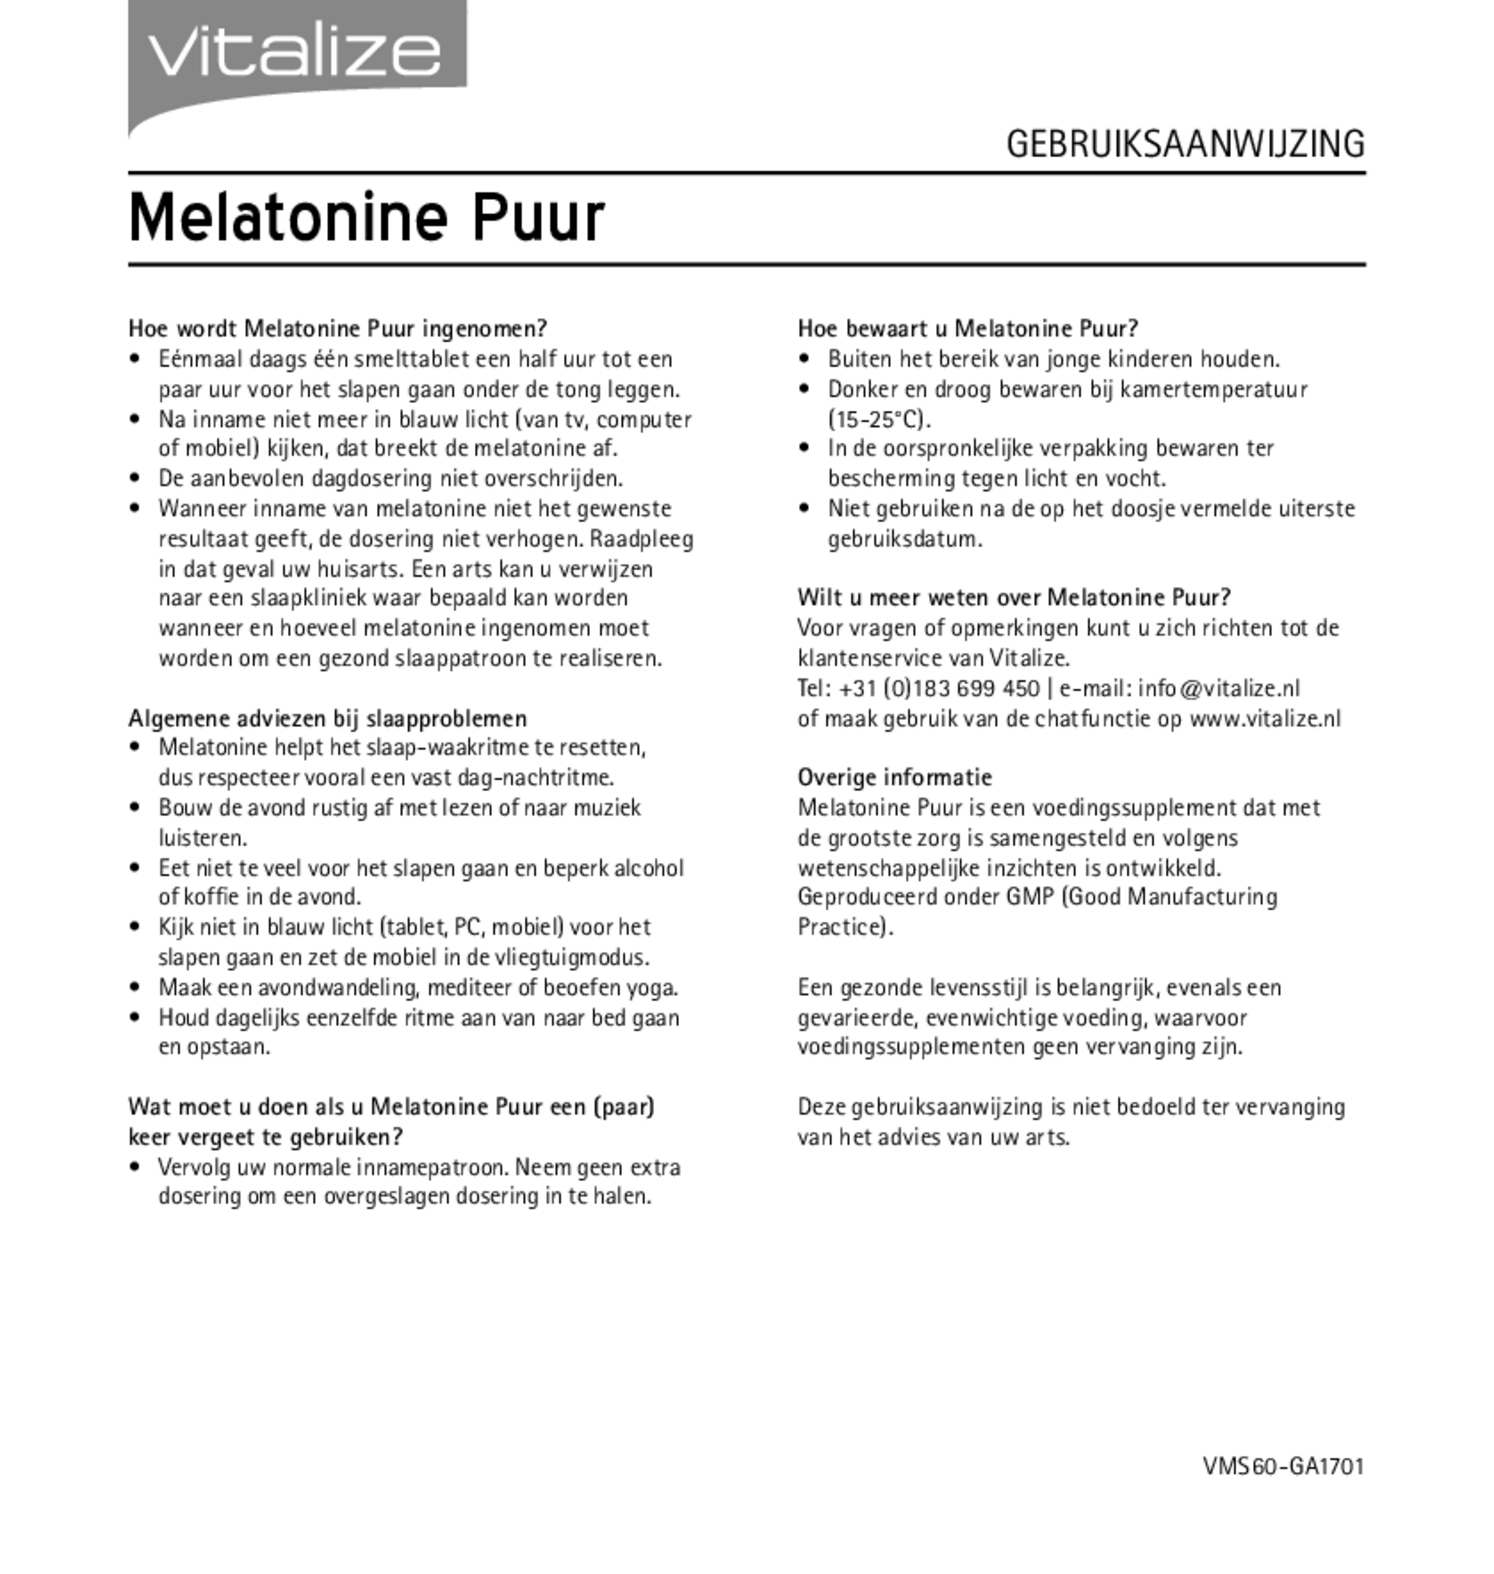 Melatonine Puur 0,299 mg Tabletten afbeelding van document #2, gebruiksaanwijzing